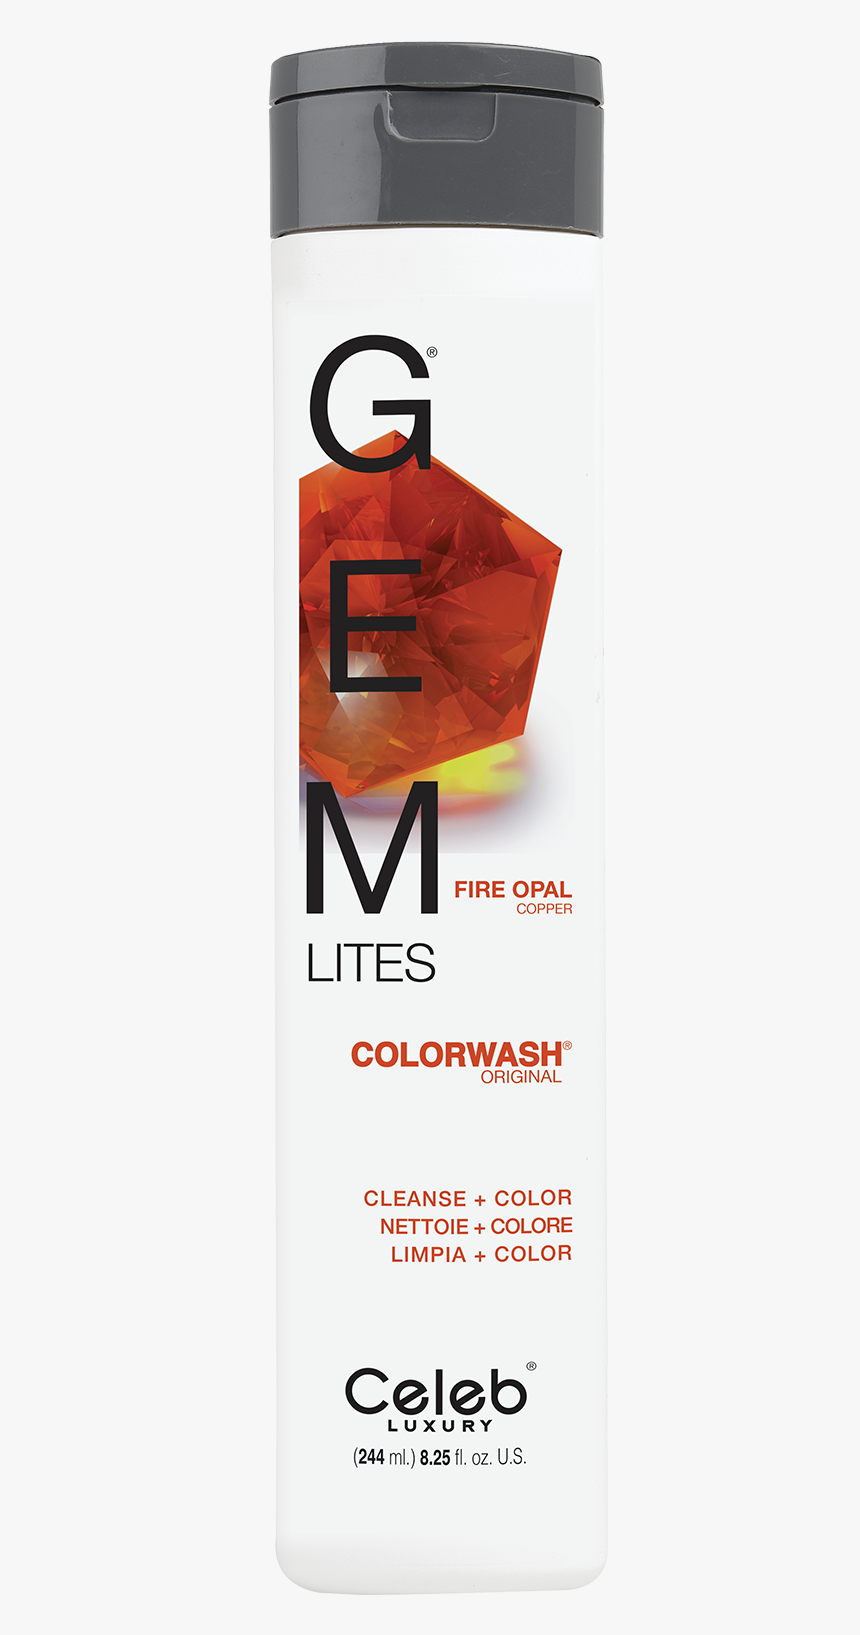 Gem Lites Fire Opal Colorwash - Orange Viral Shampoo, HD Png Download, Free Download